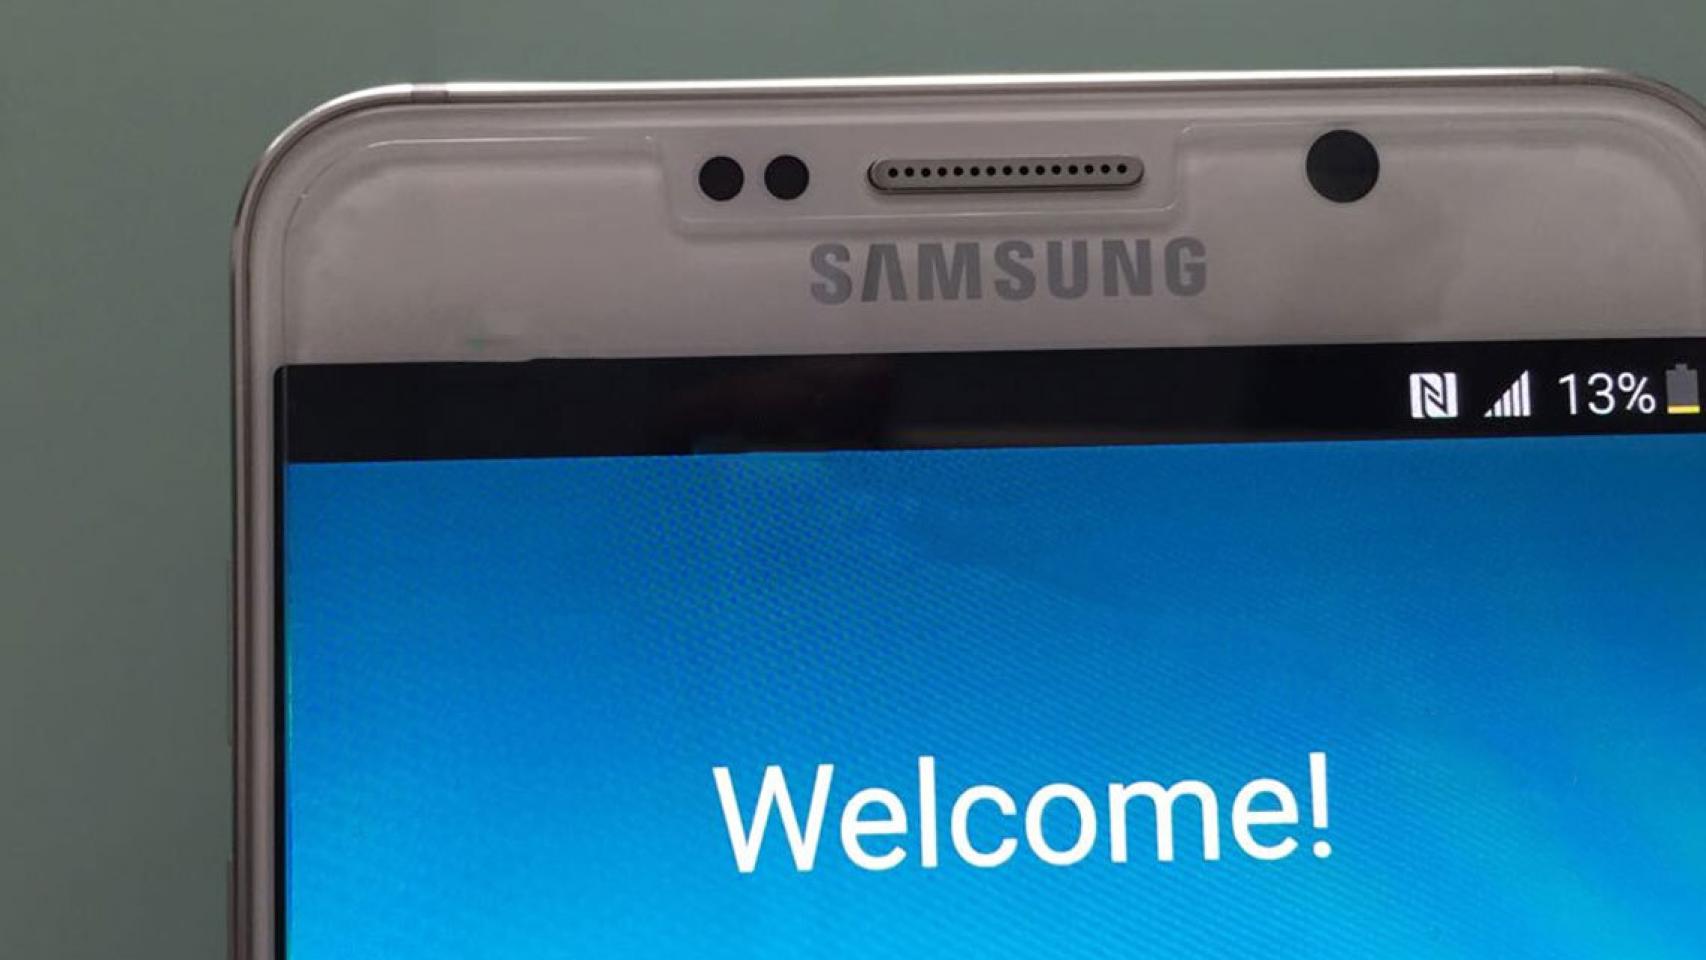 Primeras imágenes filtradas del Samsung Galaxy Note 5